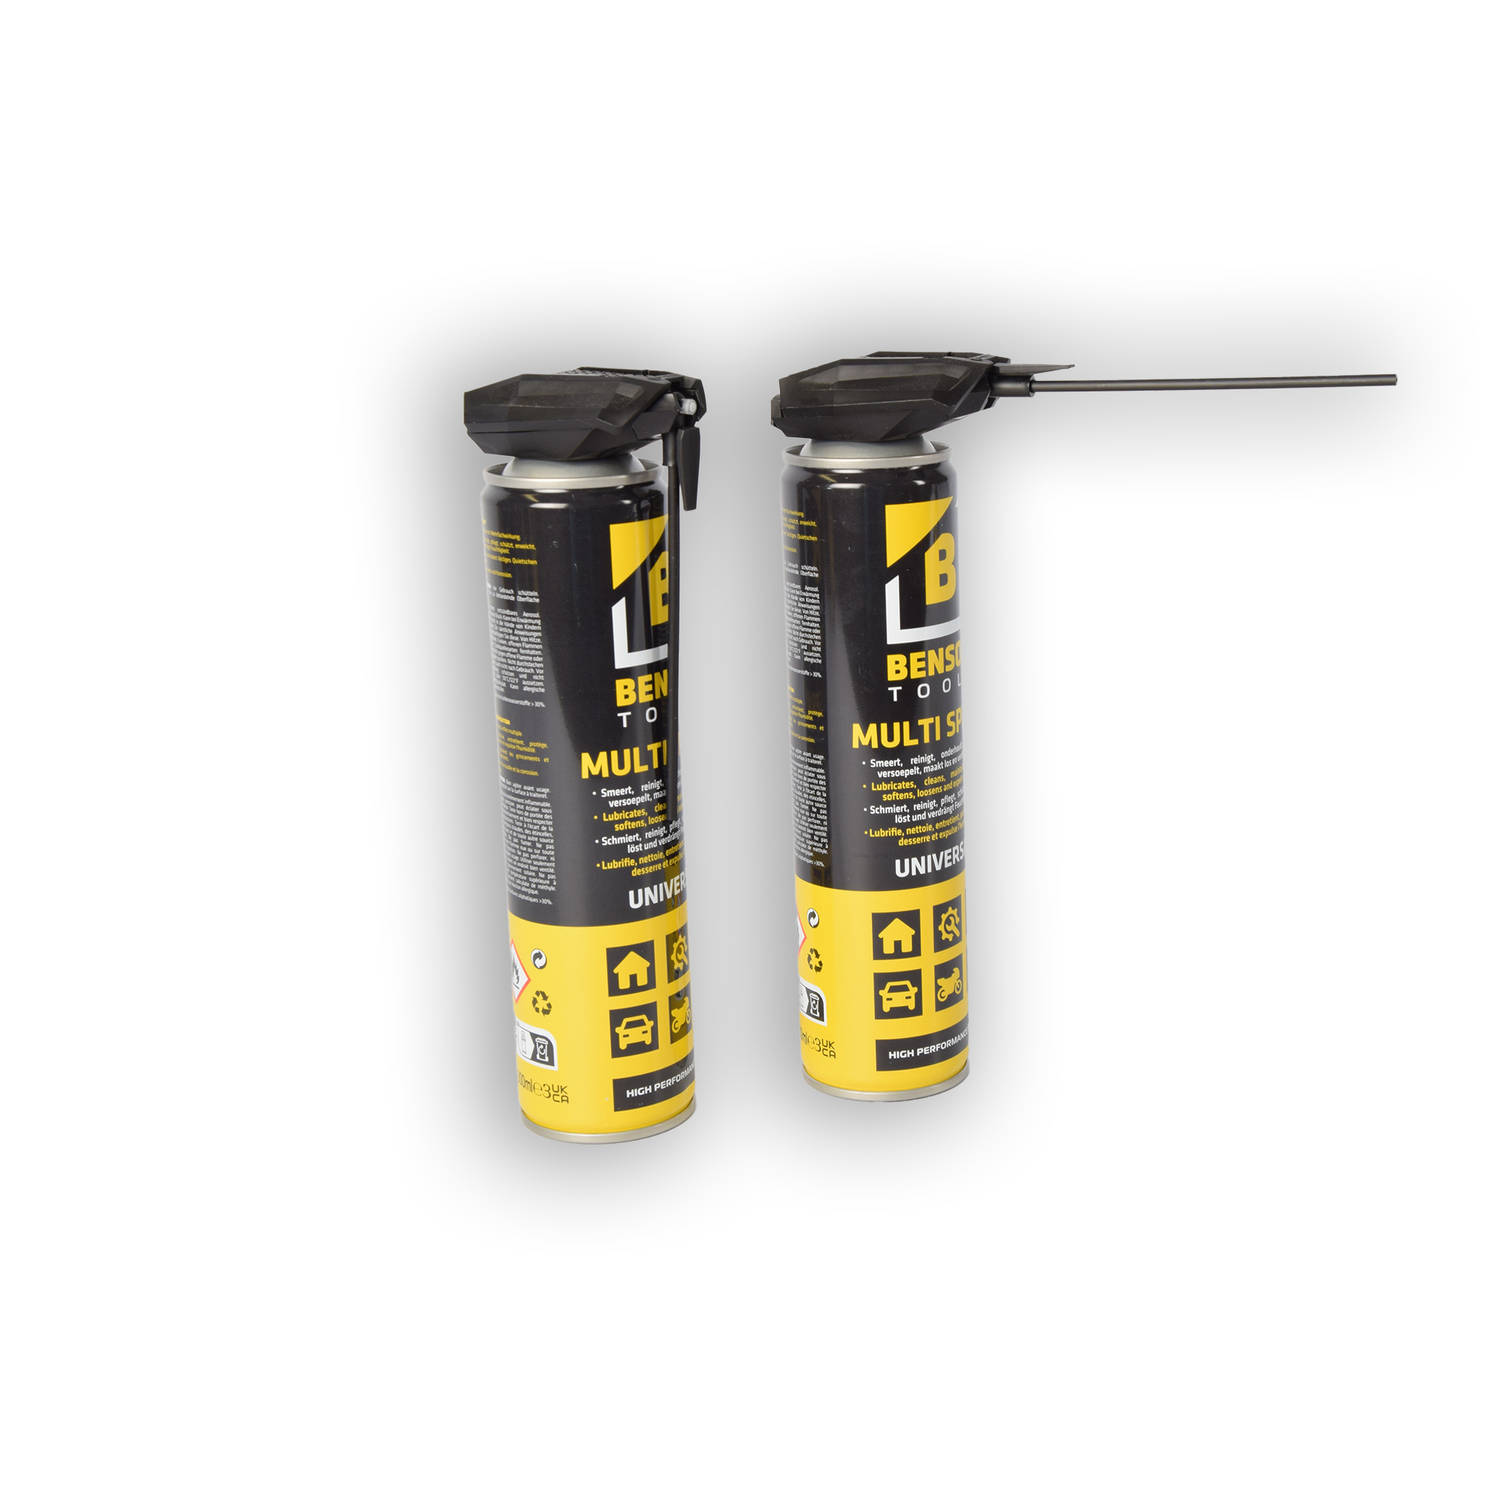 Multi Spray - 8-in-1 Reiniging en Smeermiddel (2x300 ml) - Multifunctioneel voor Huishouden en Onderhoud